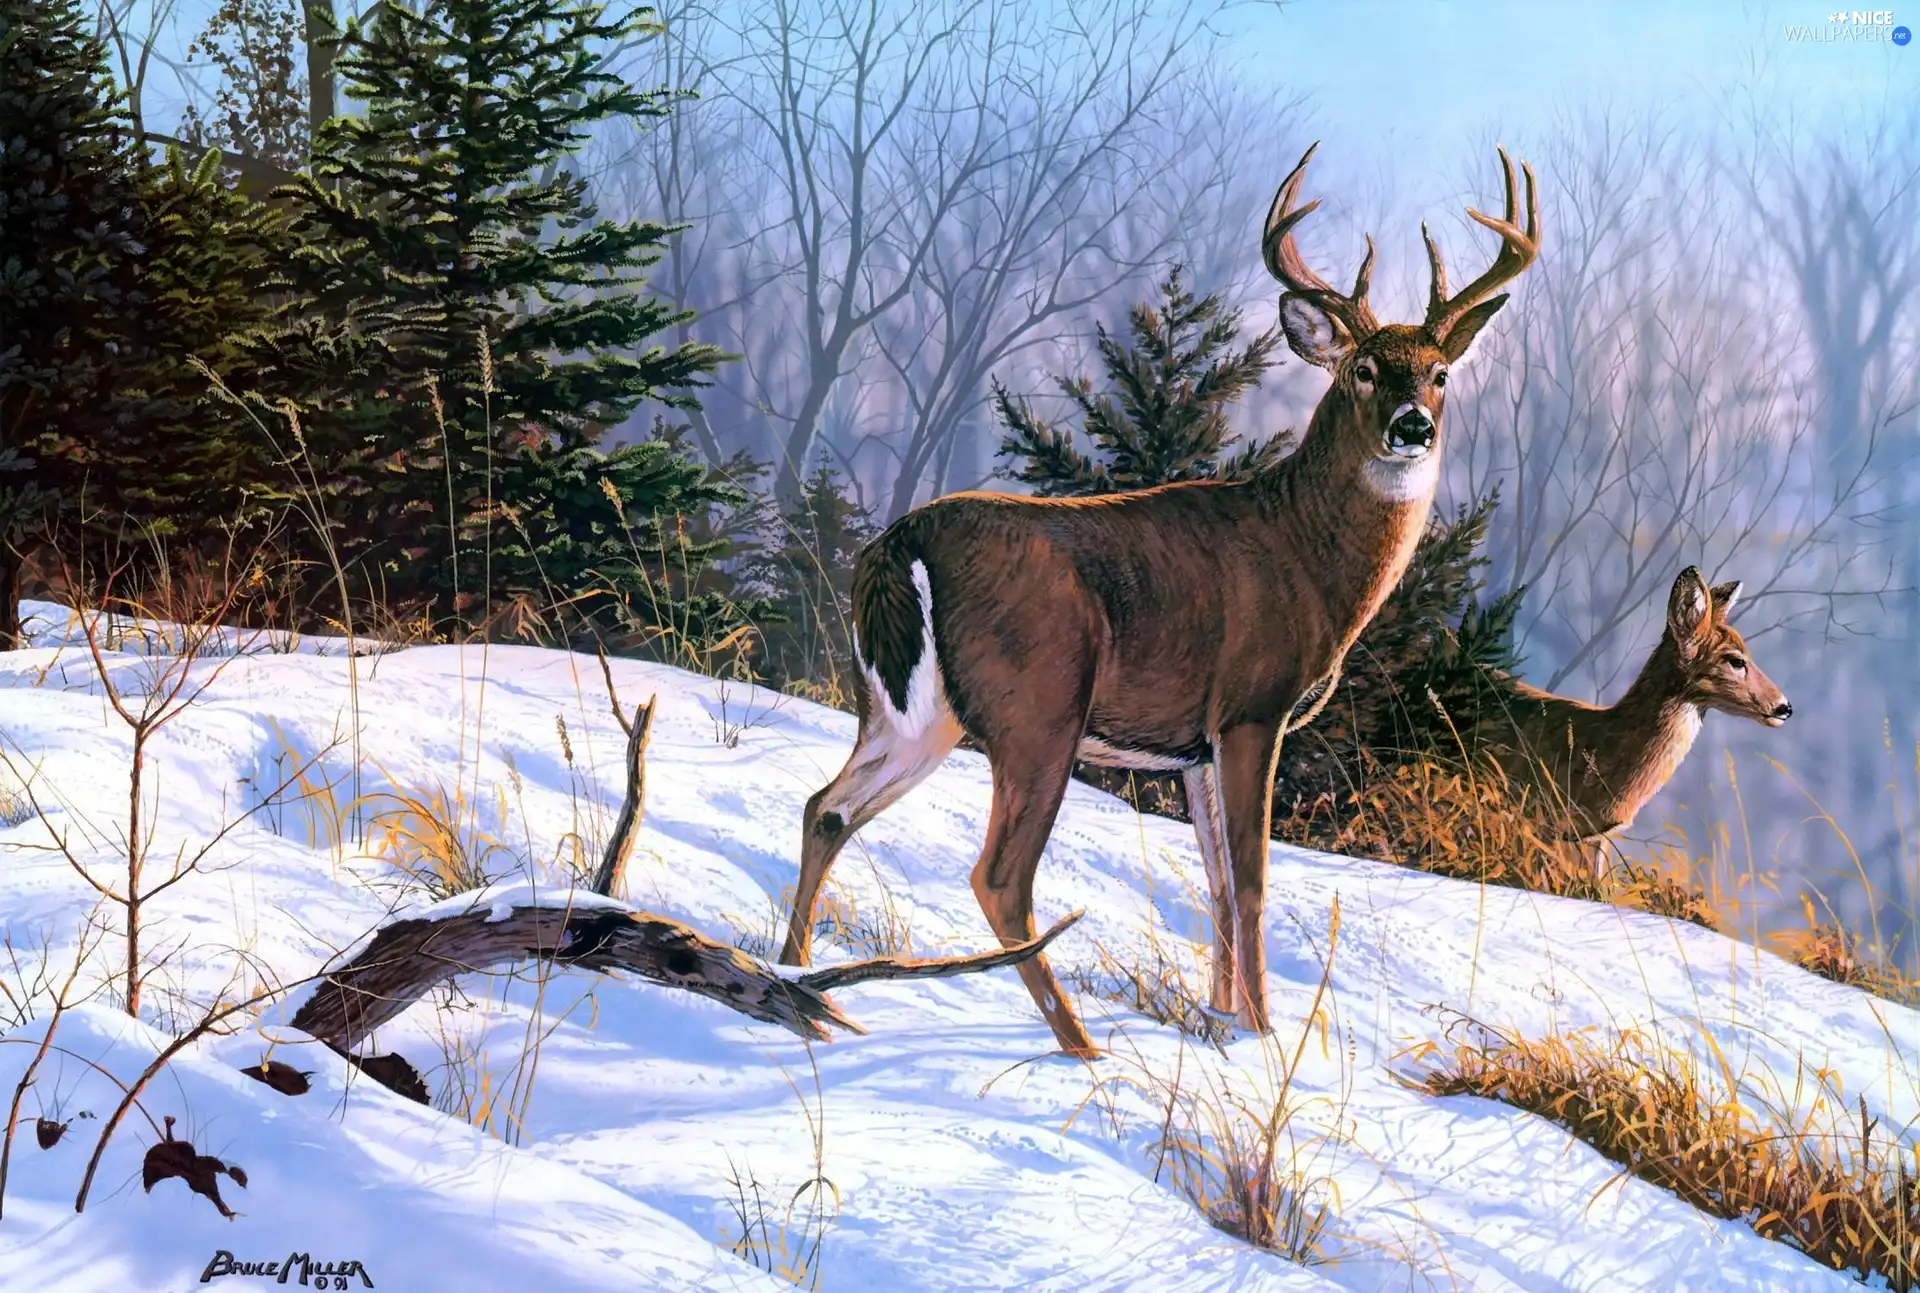 winter, Bruce Miller, doe, forest, deer